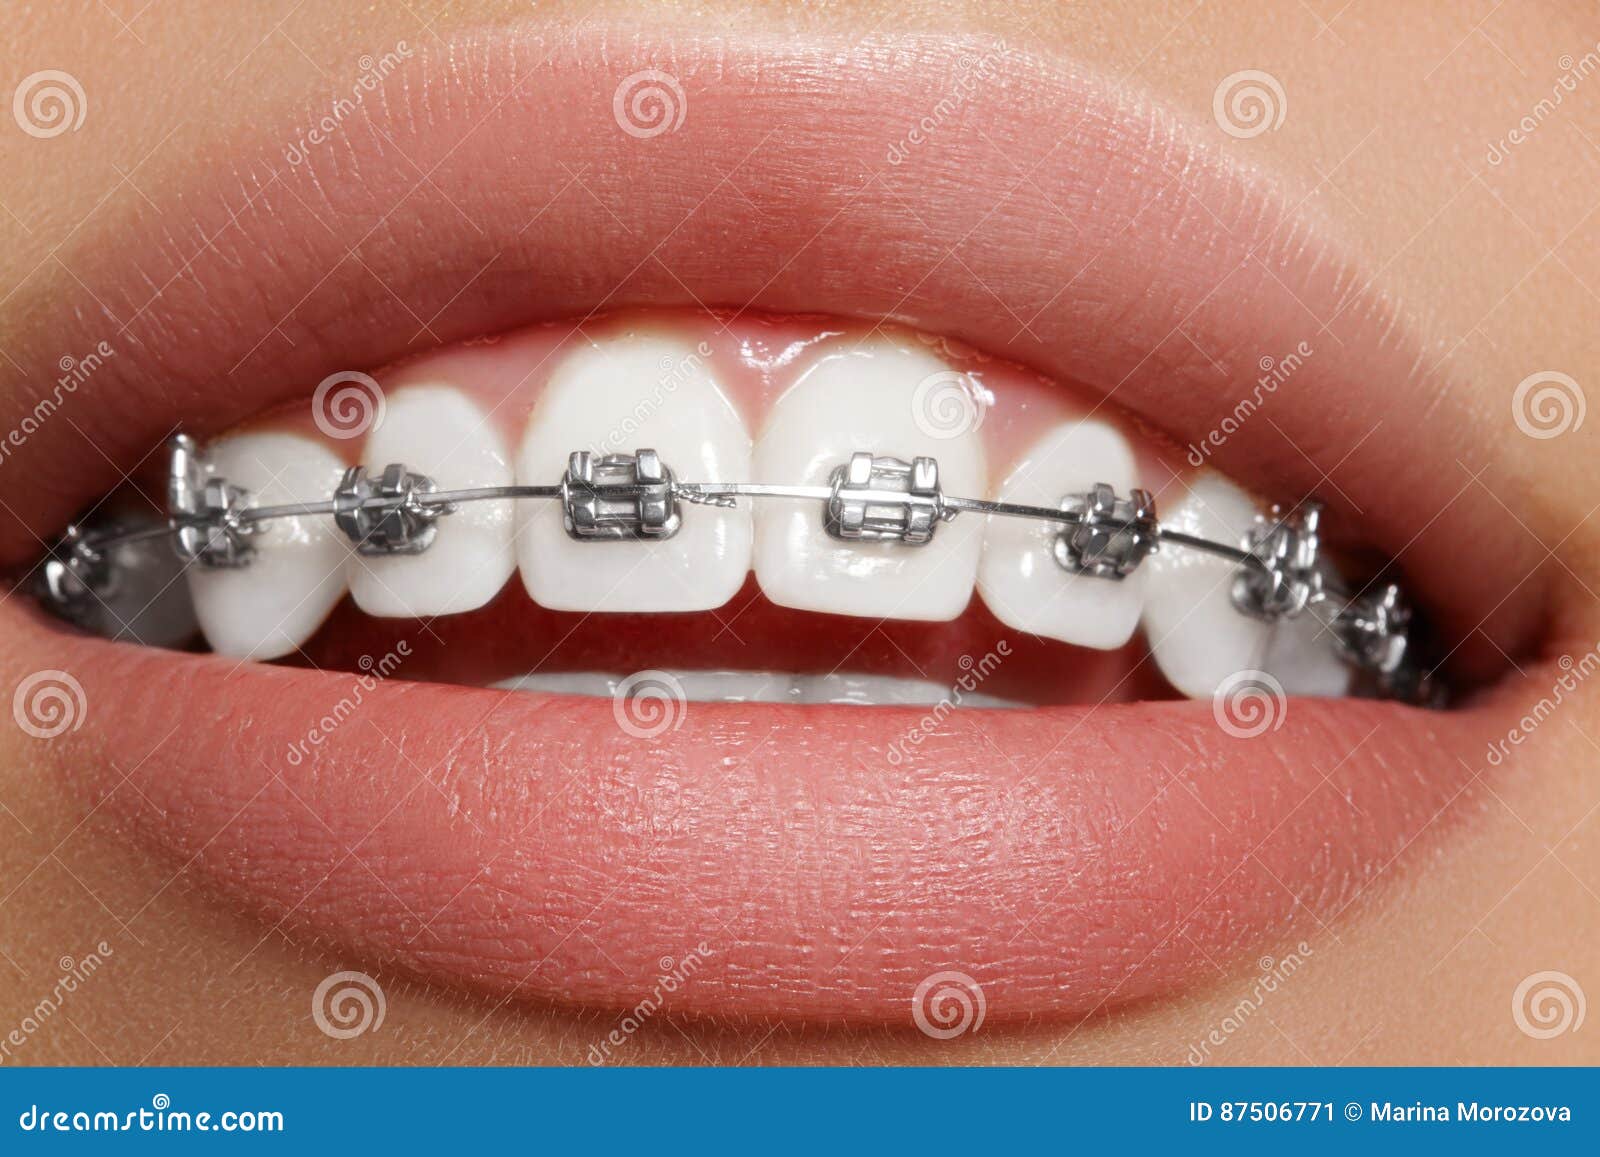 Schone Weisse Zahne Mit Klammern Zahnpflegefoto Frauenlacheln Mit Ortodontic Zubehor Orthodontiebehandlung Stockbild Bild Von Schone Klammern